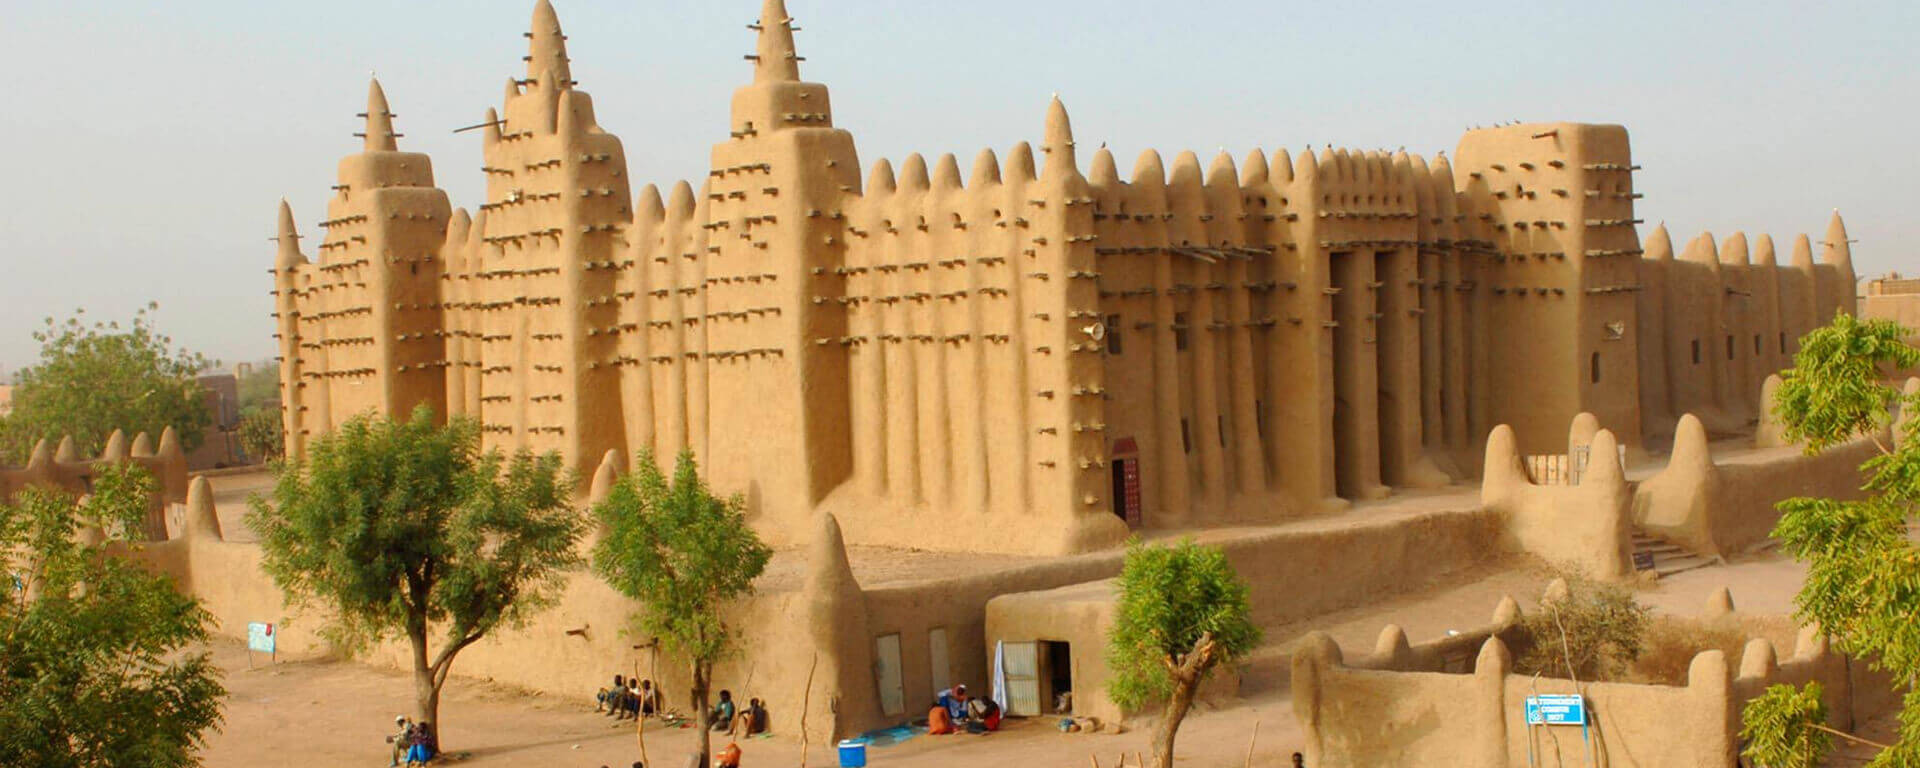 Mali Tourist Attractions